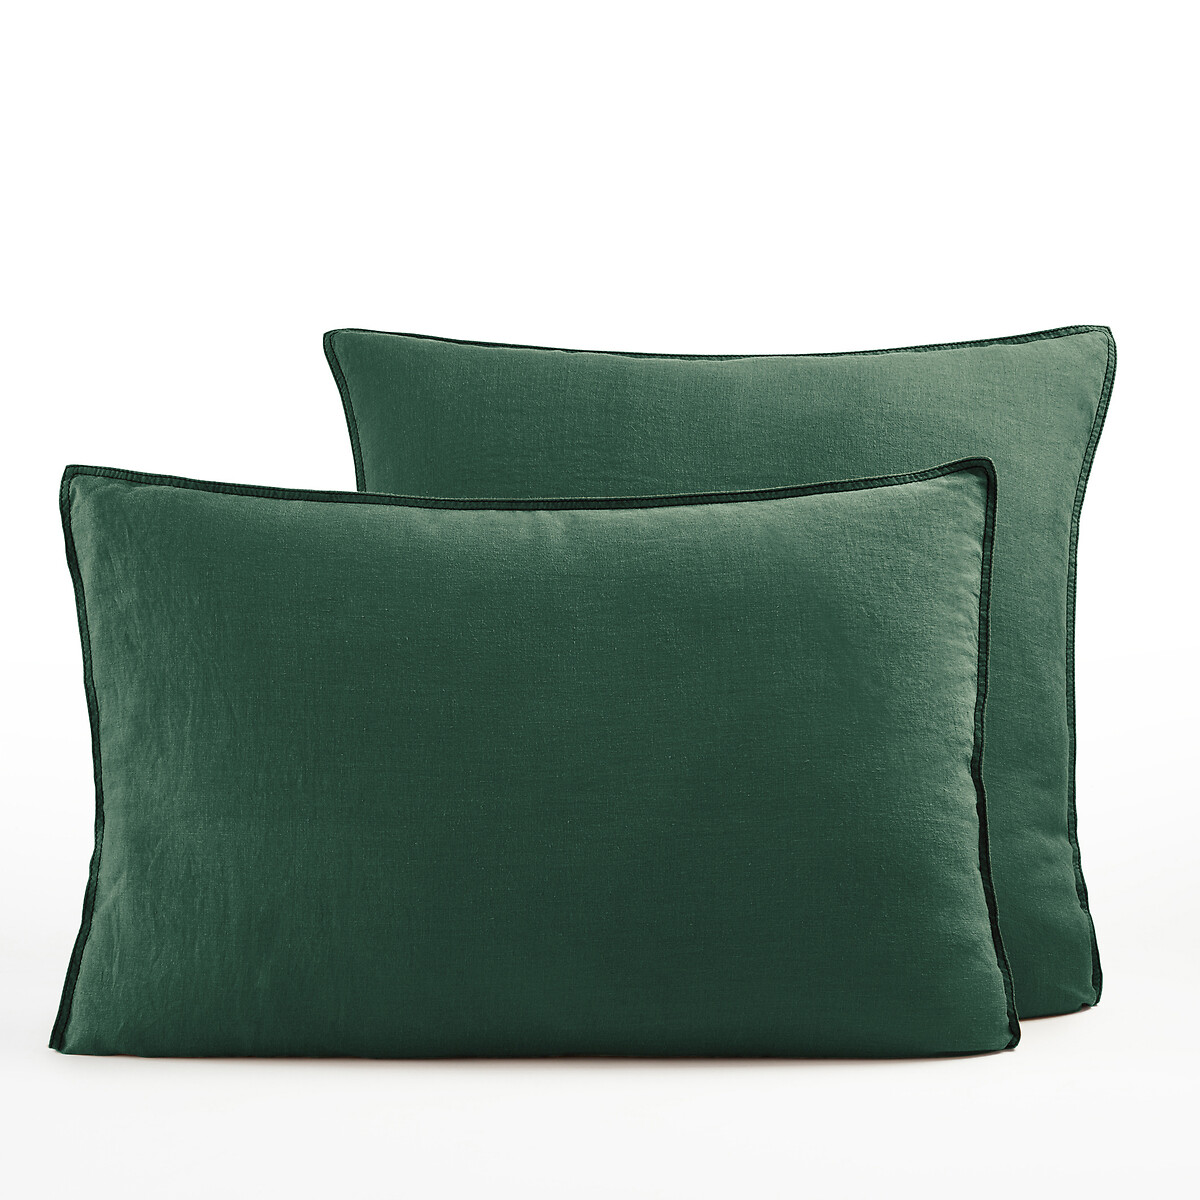 Наволочка На подушку из стираной пеньки Helm 65 x 65 см зеленый